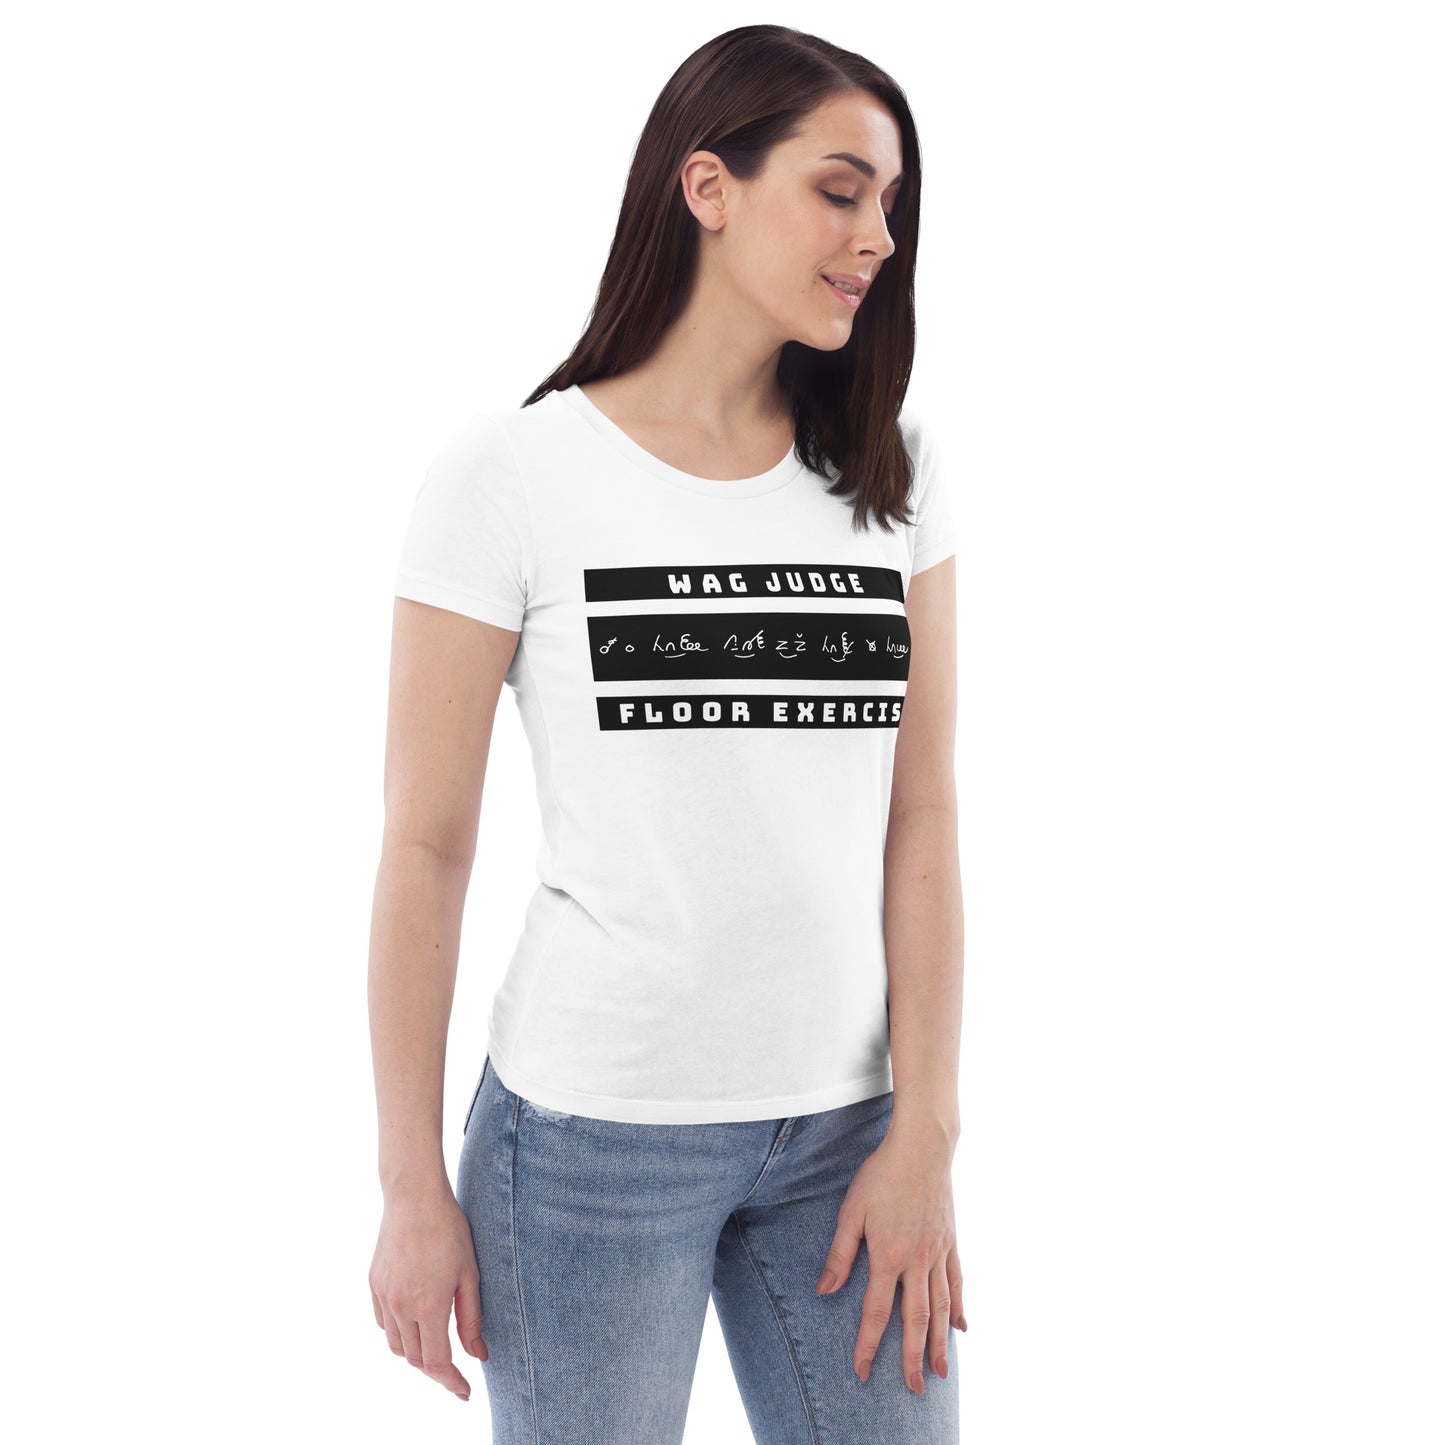 Jurylid Vloer - Getailleerd Eco-T-shirt (wit) voor dames